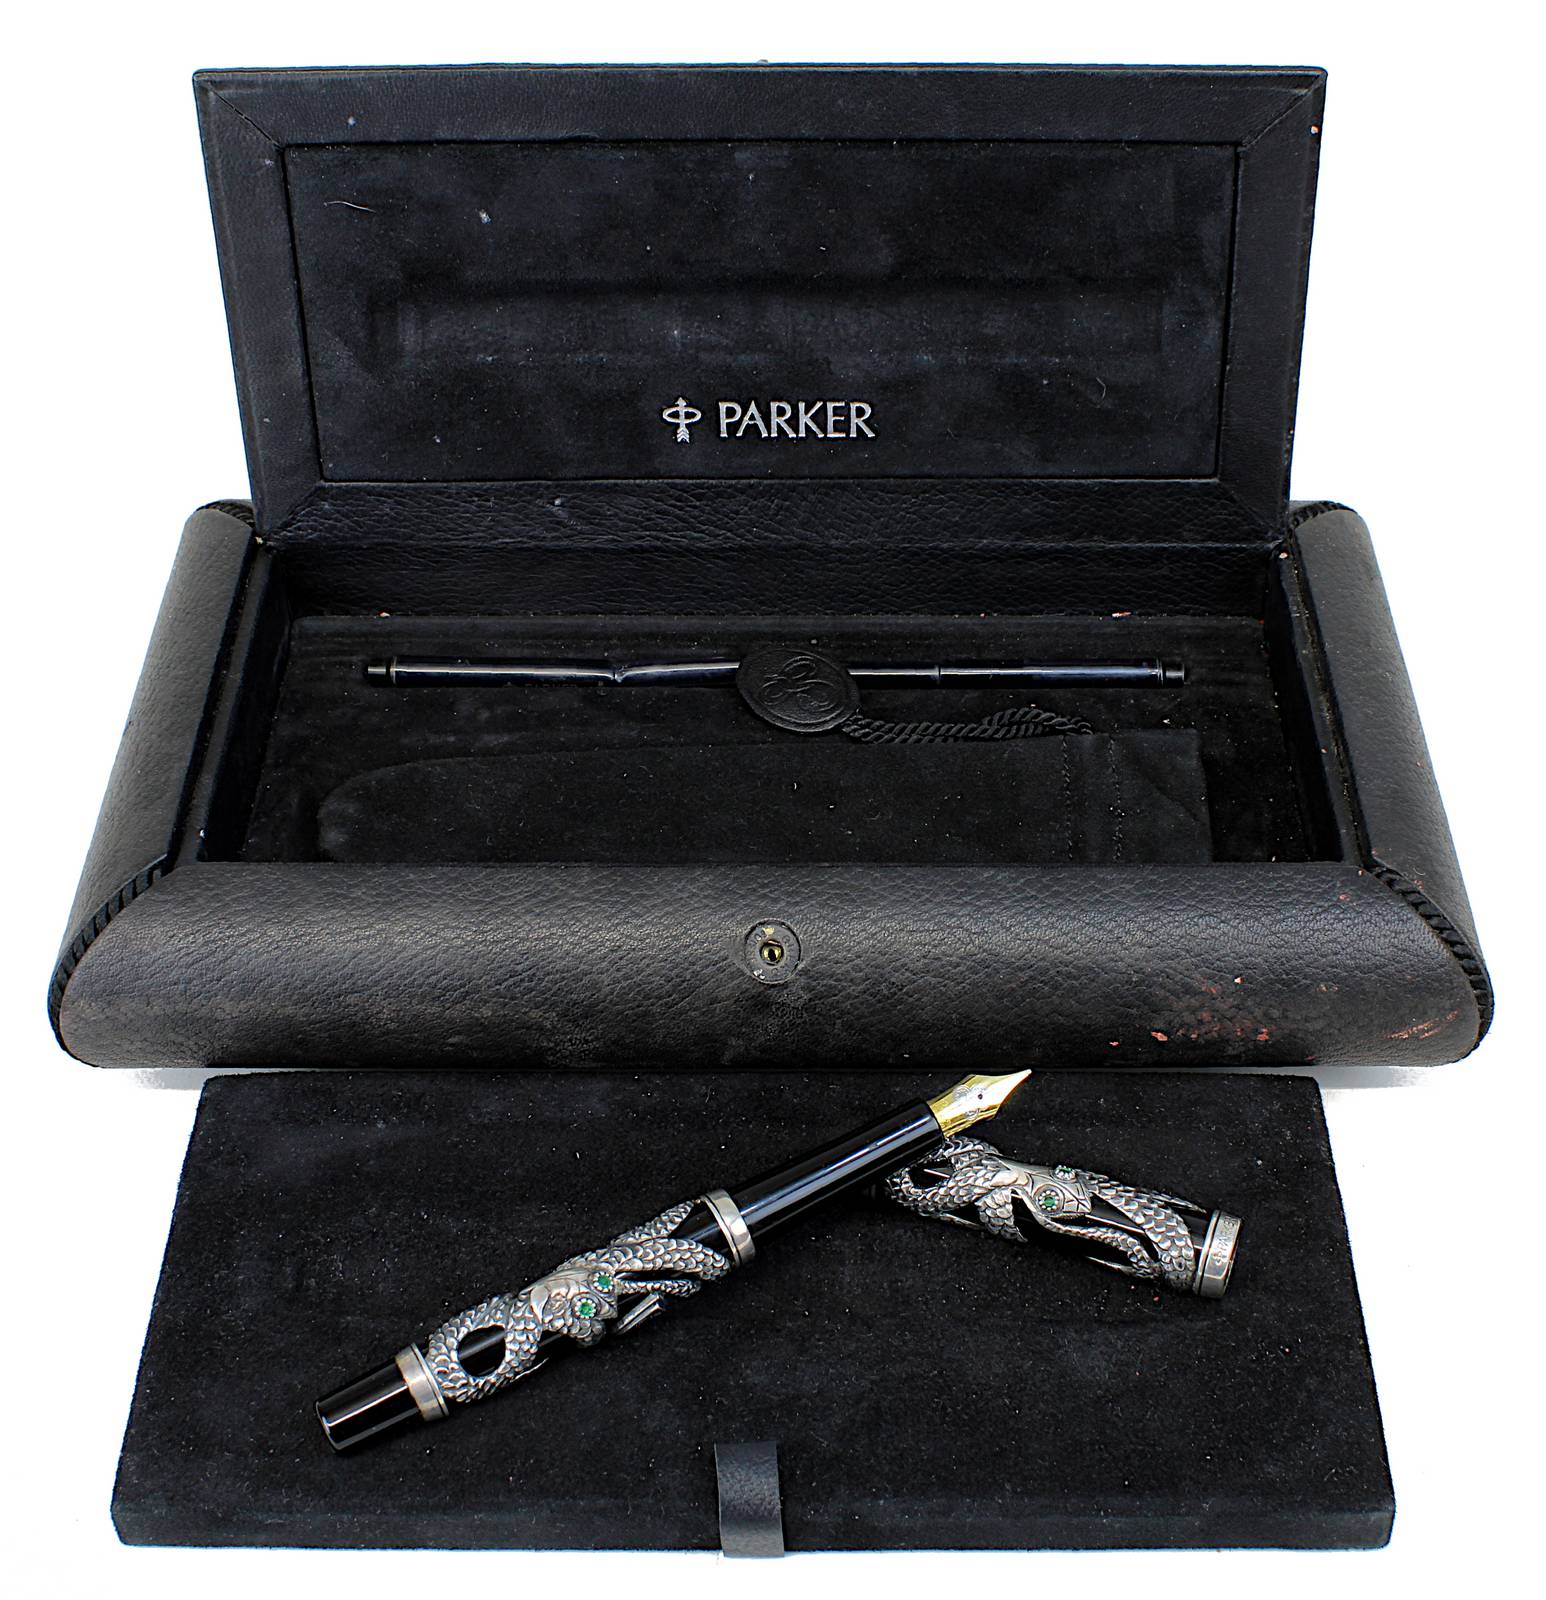 Parker Snake Silber Füllfederhalter mit 18 kt. Goldfeder, Limited Edition 500 PC/4845, schwarzes